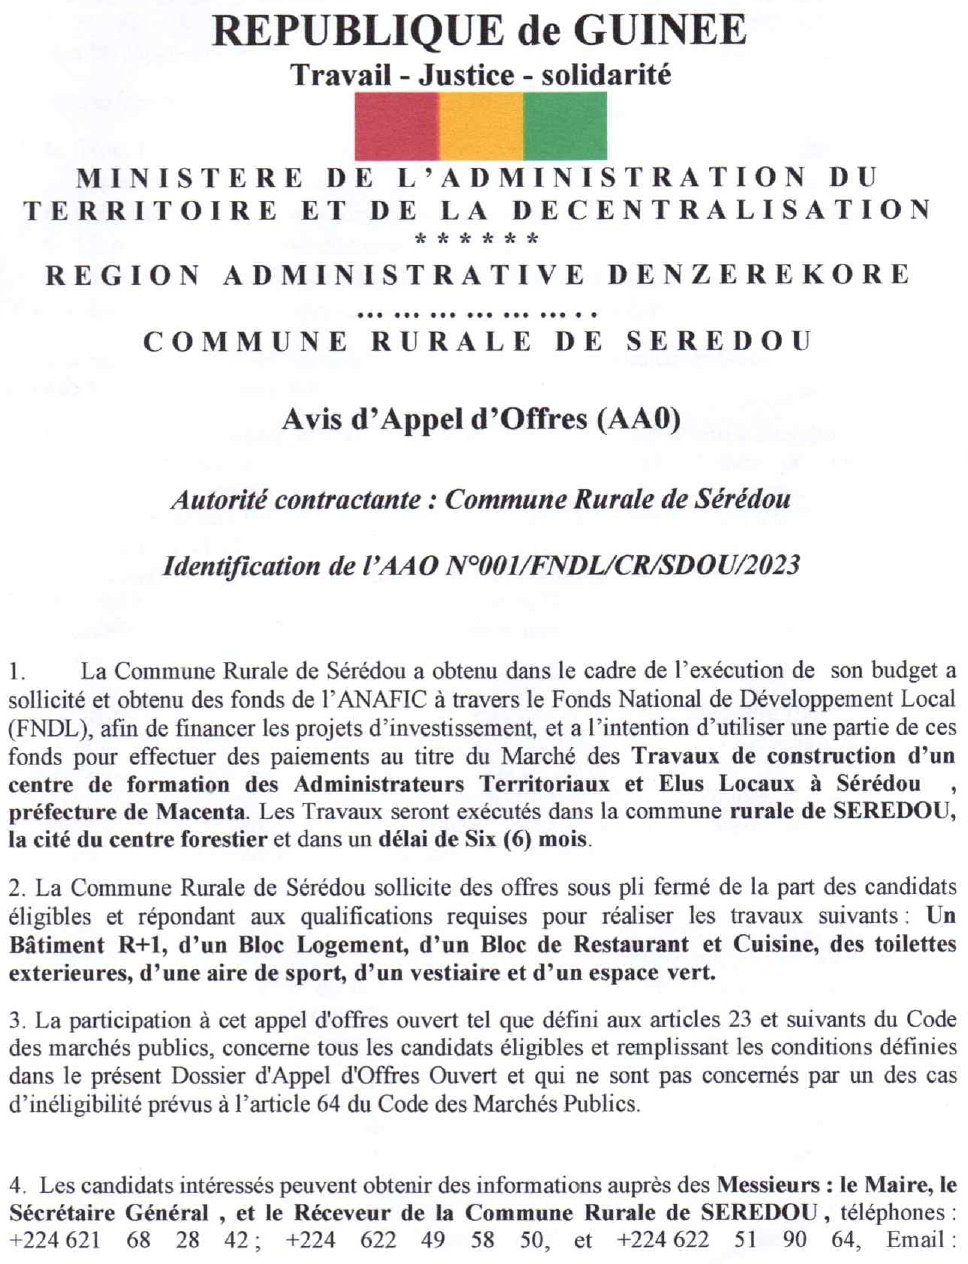 Marché des Travaux de construction d'un centre de formation des Administrateurs Territoriaux et Elus Locaux à Sérédou , préfecture de Macenta | page 1